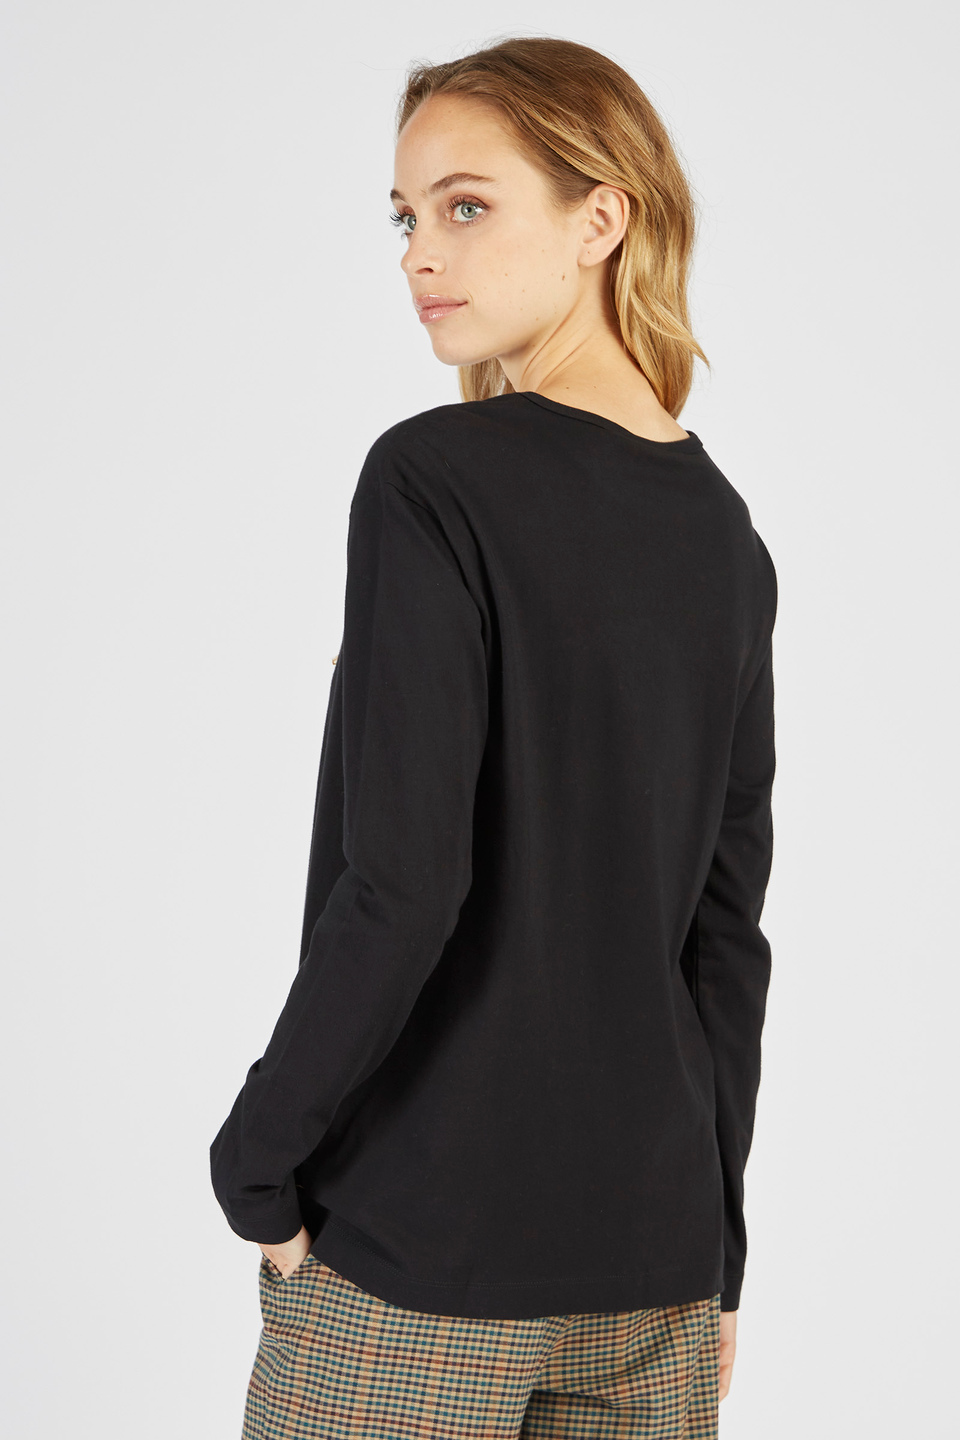 Damen-T-Shirt aus Baumwolle mit Rundhalsausschnitt und langen Ärmeln | La Martina - Official Online Shop